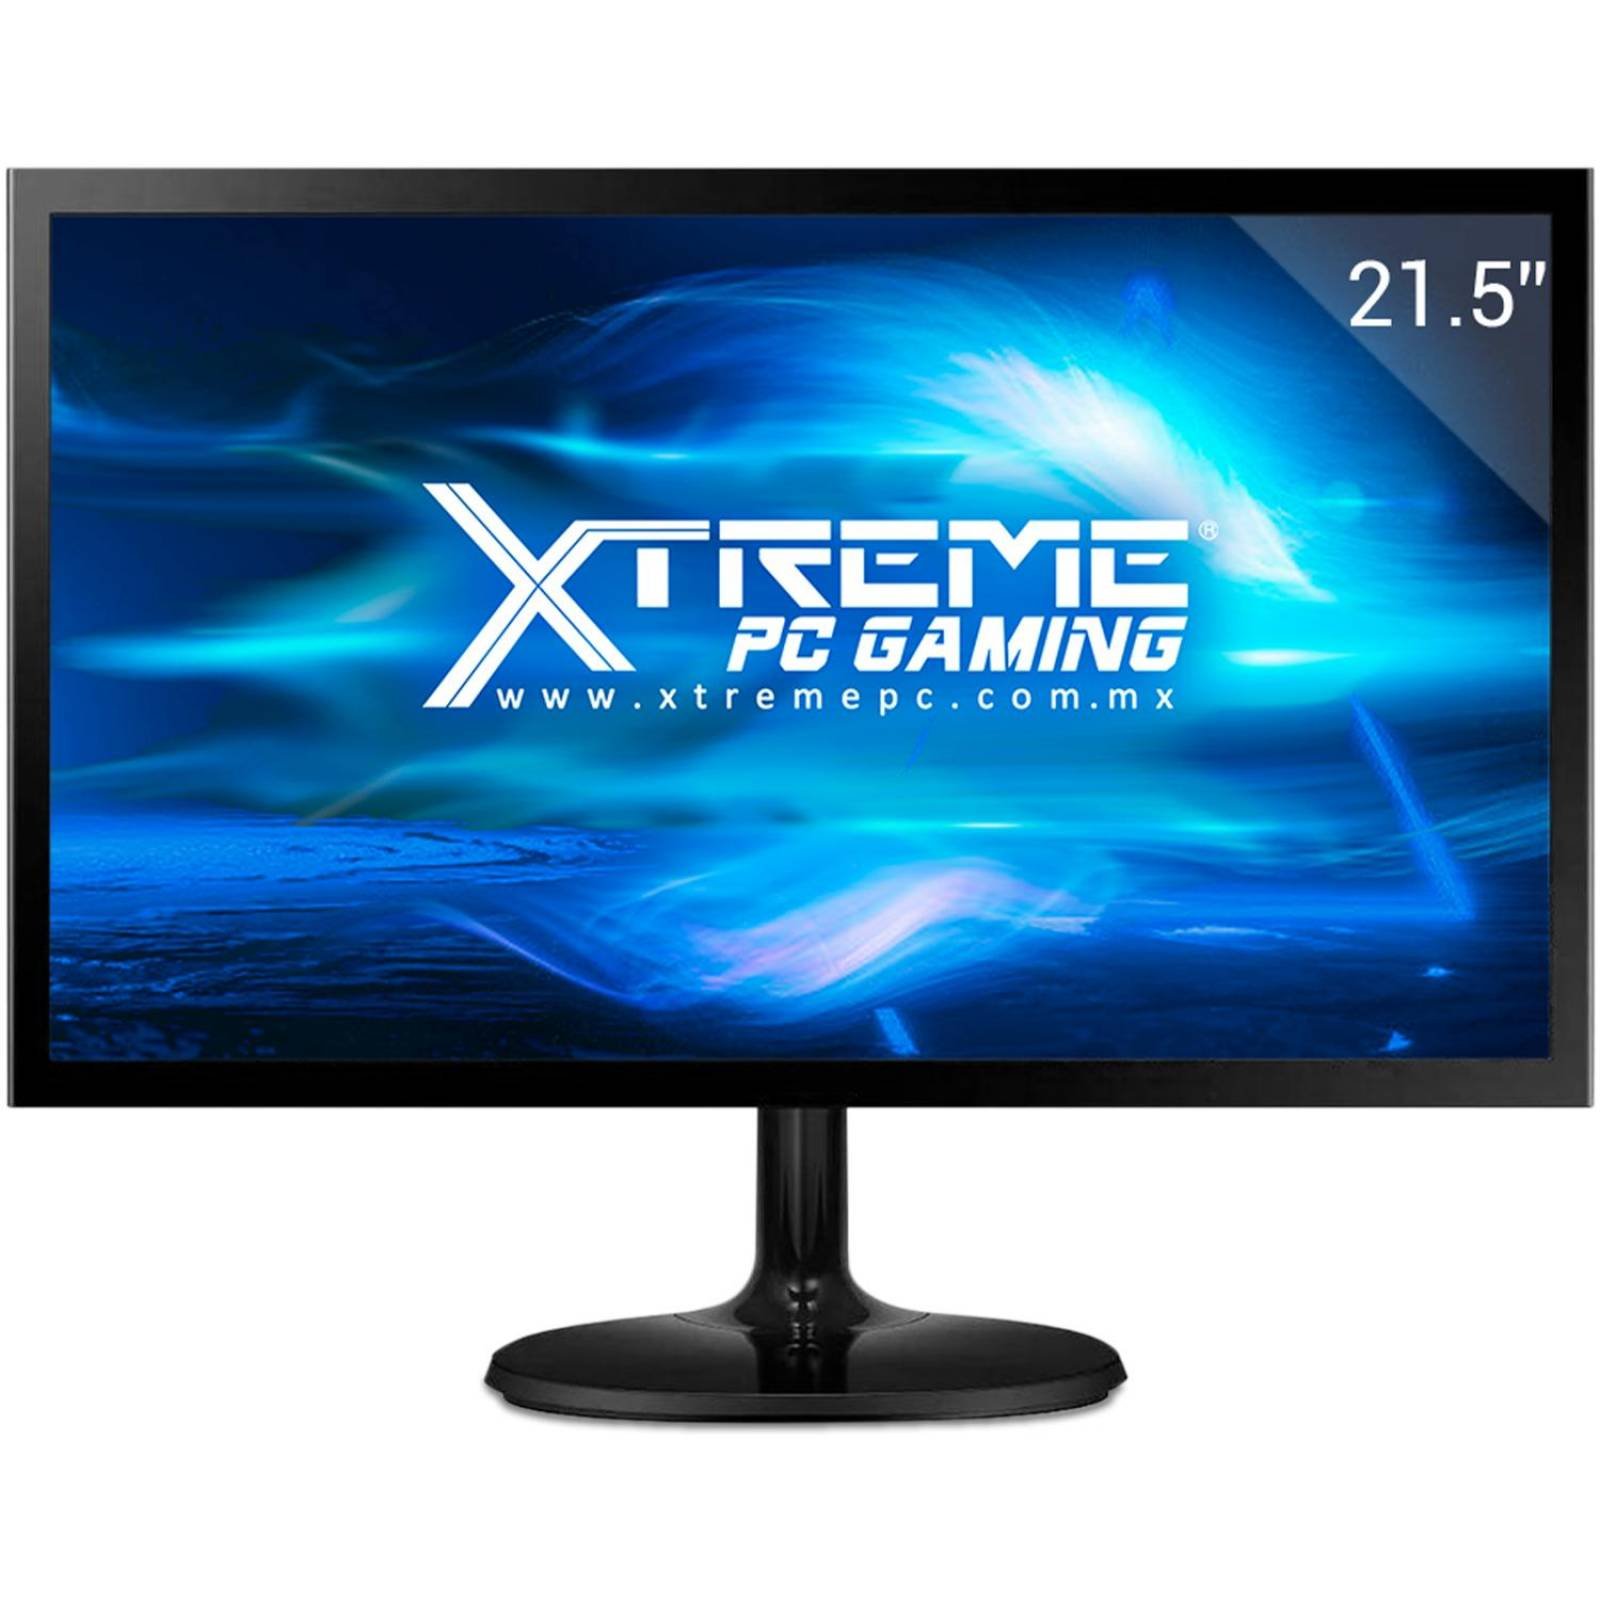 Xtreme PC Gamer AMD Radeon R5 A6 9500 8GB 1TB Monitor 21.5 Camara Web WIFI 